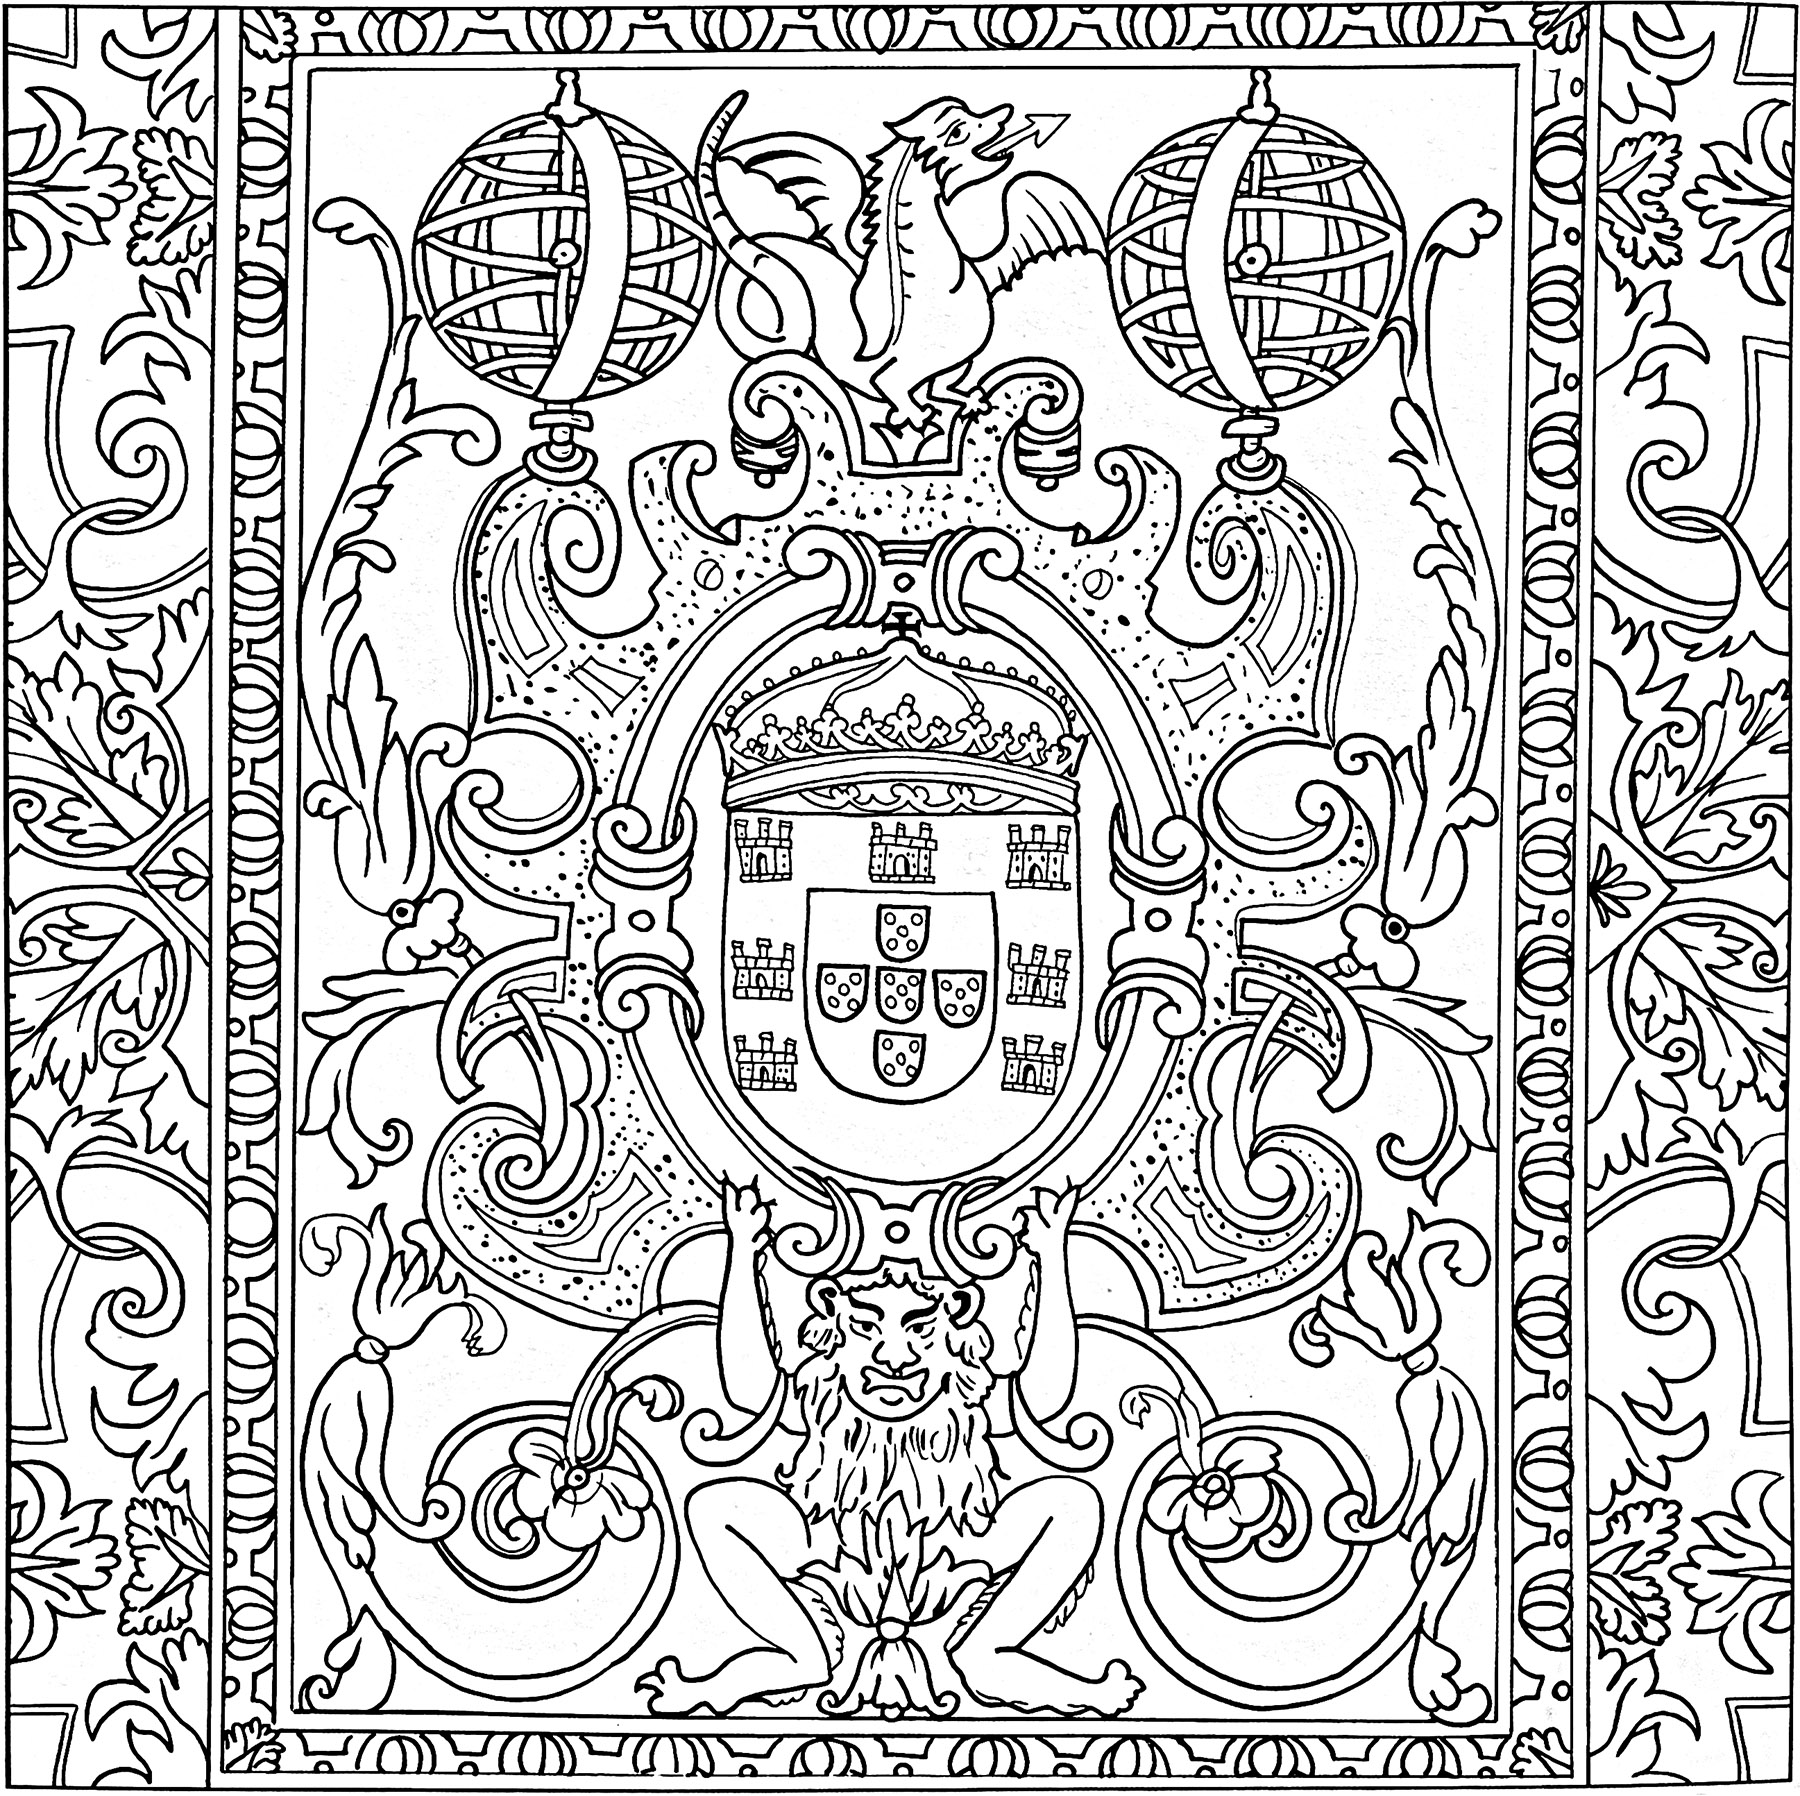 Azulejo del XVII secolo (Sintra, Portogallo). Questa colorazione è stata realizzata a partire da un azulejo del Palazzo Nazionale Pena di Sintra, in Portogallo. Risale al XVII secolo.